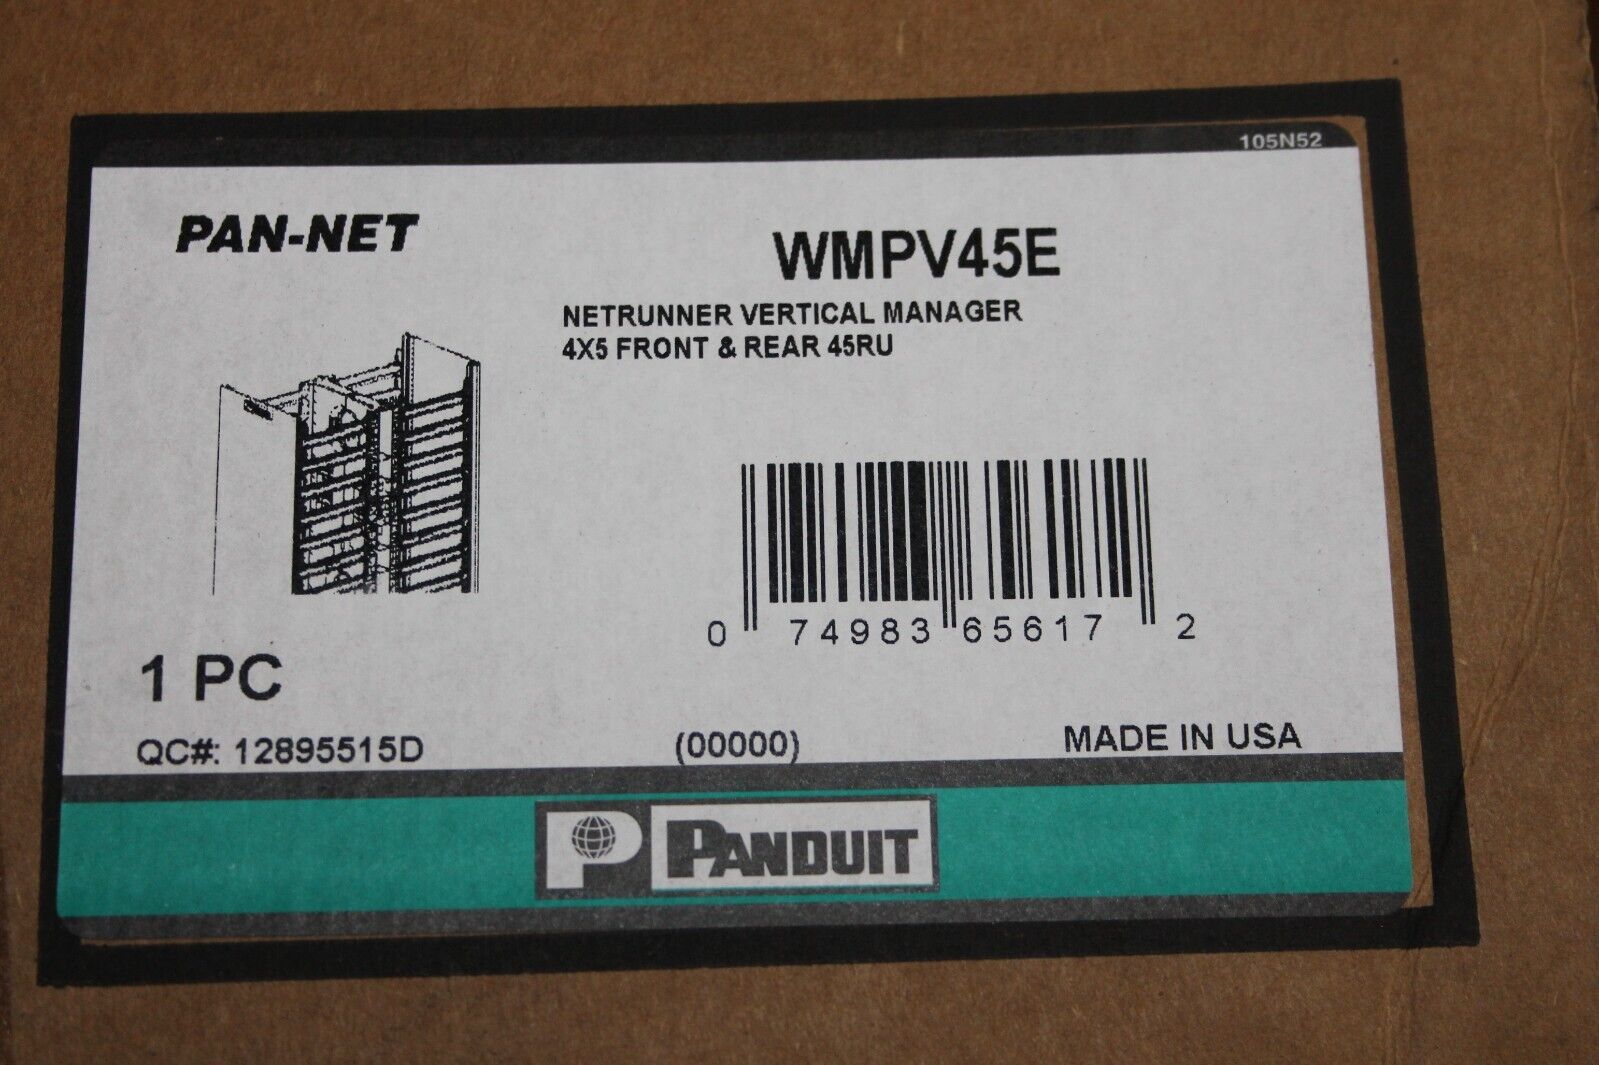 Panduit Pan-Net WMPV45E Netrunner Vertical Manager 4X5 Front & Rear 45RU NEW